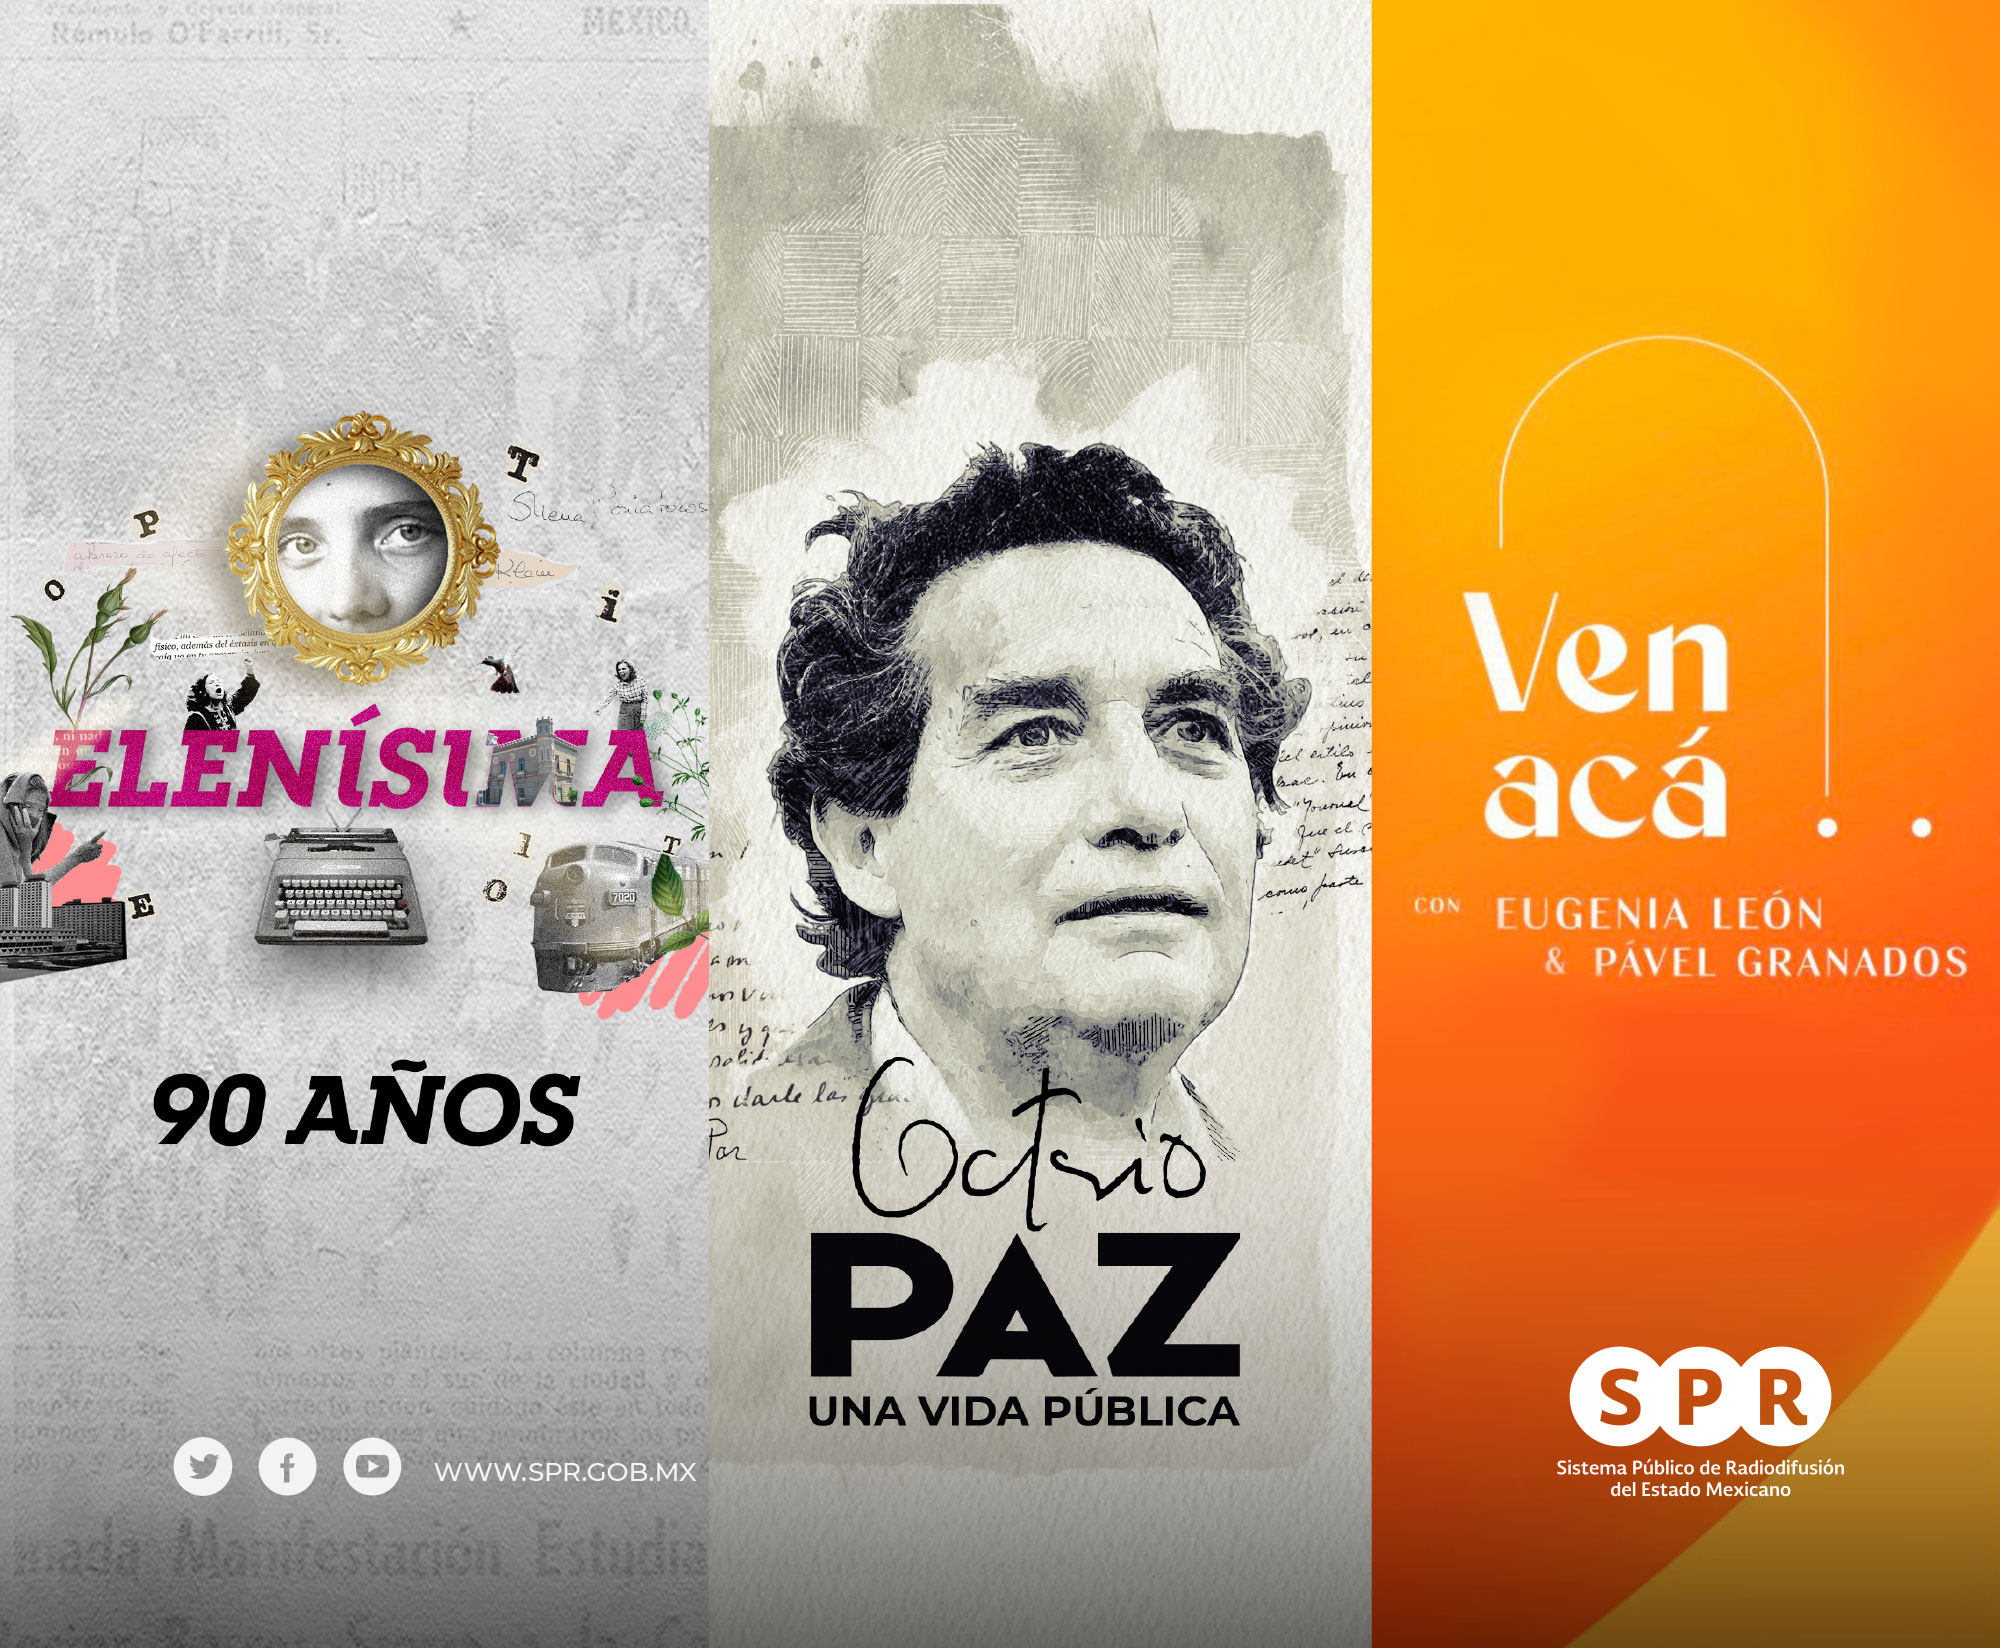 Canal Catorce, del SPR, transmitirá este 19 de abril programación cultural especial sobre Elena Poniatowska, Octavio Paz y la serie “Ven Acá”: la apuesta más ambiciosa de los medios públicos en cultura y entretenimiento